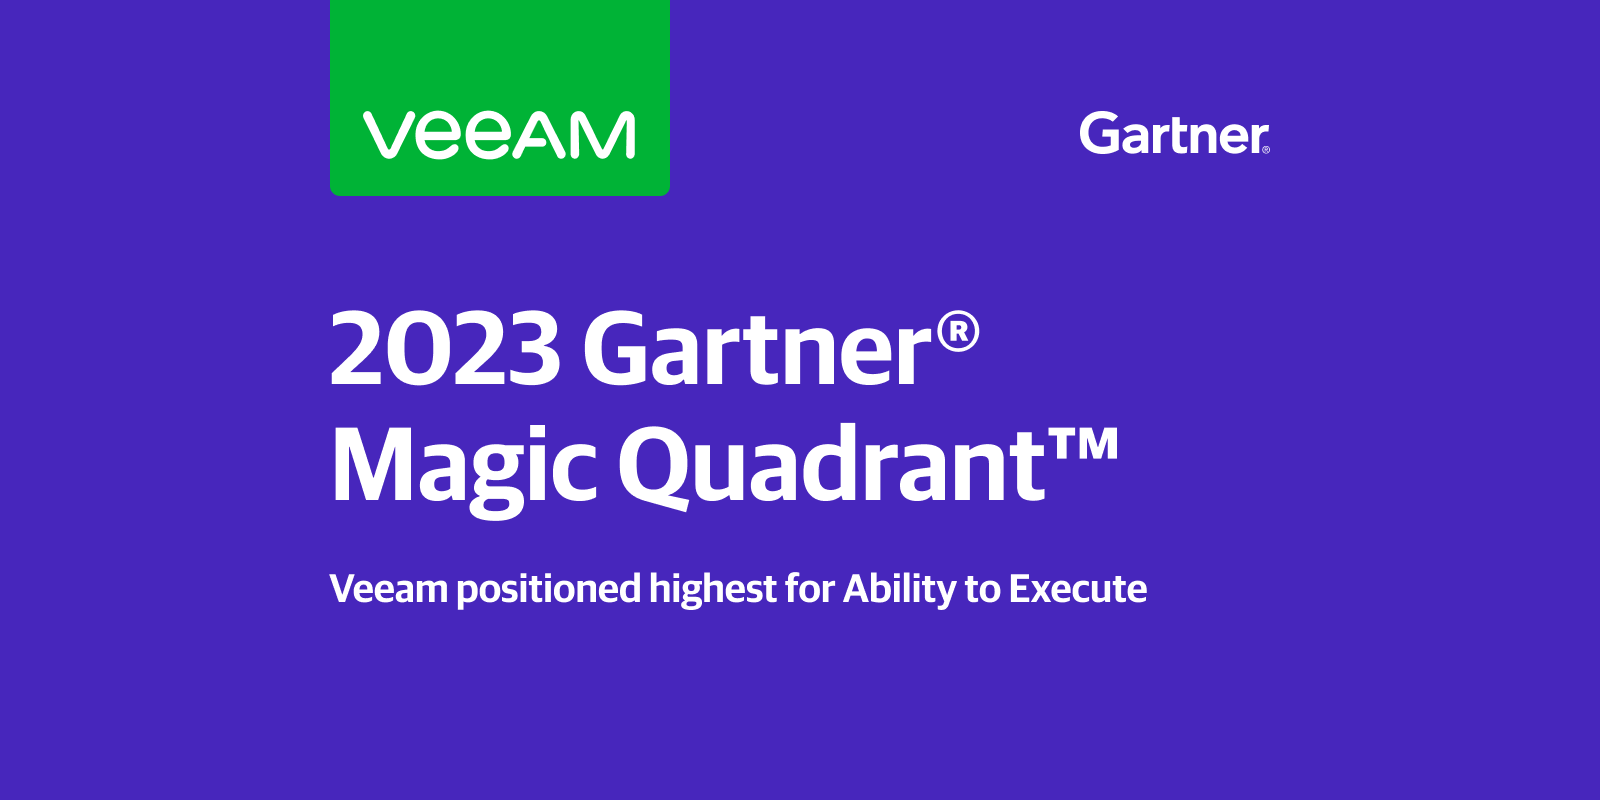 2023 Gartner Magic Quadrant 7th Time Leader Veeam